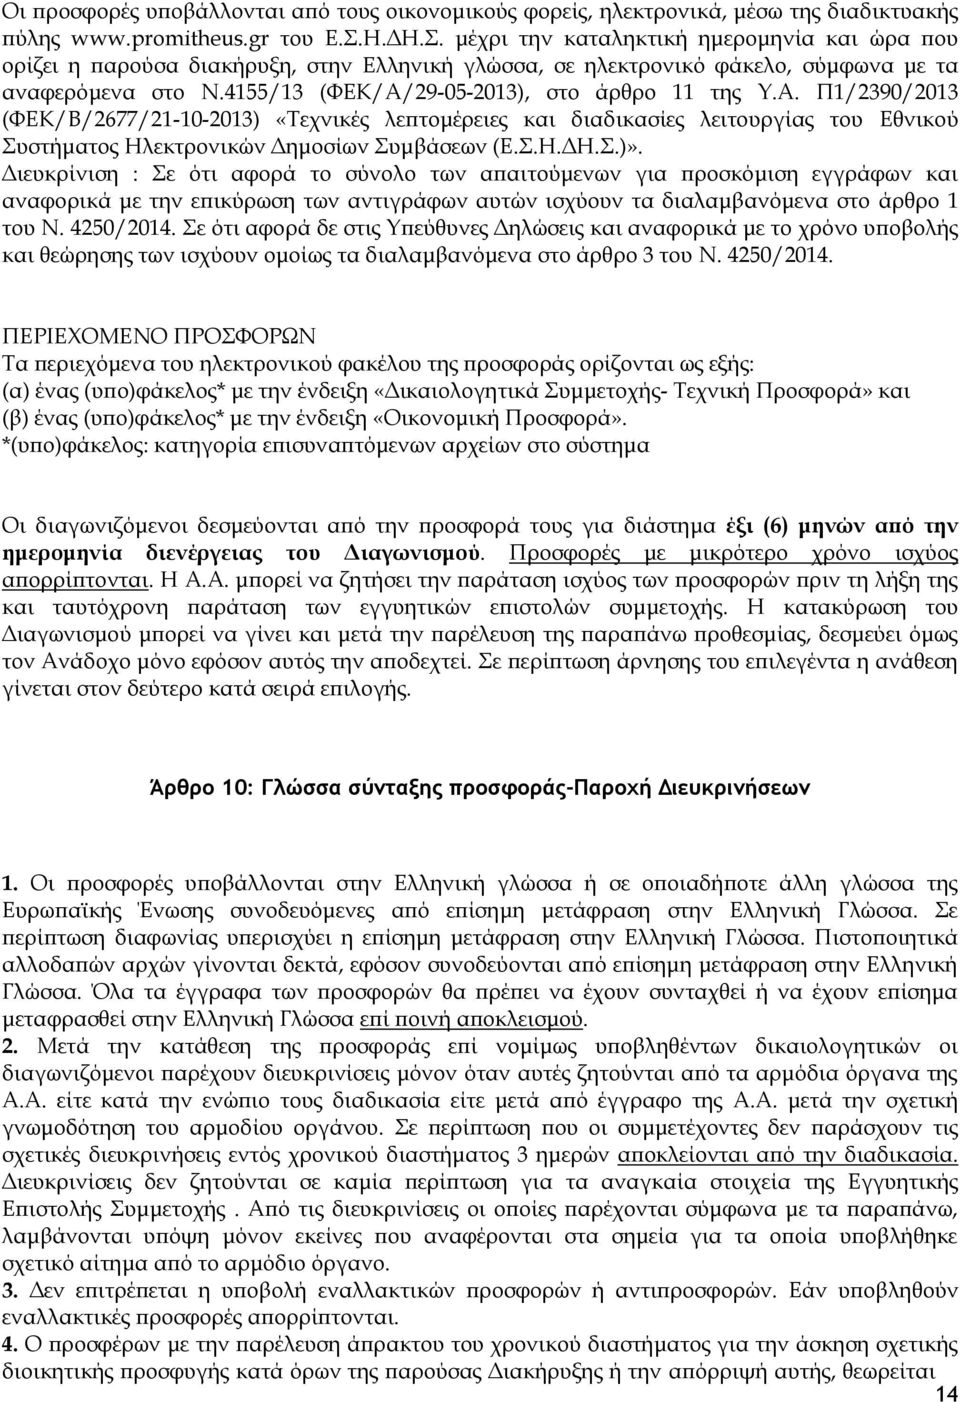 4155/13 (ΦΕΚ/Α/29-05-2013), στο άρθρο 11 της Υ.Α. Π1/2390/2013 (ΦΕΚ/Β/2677/21-10-2013) «Τεχνικές λεπτομέρειες και διαδικασίες λειτουργίας του Εθνικού Συστήματος Ηλεκτρονικών Δημοσίων Συμβάσεων (Ε.Σ.Η.ΔΗ.